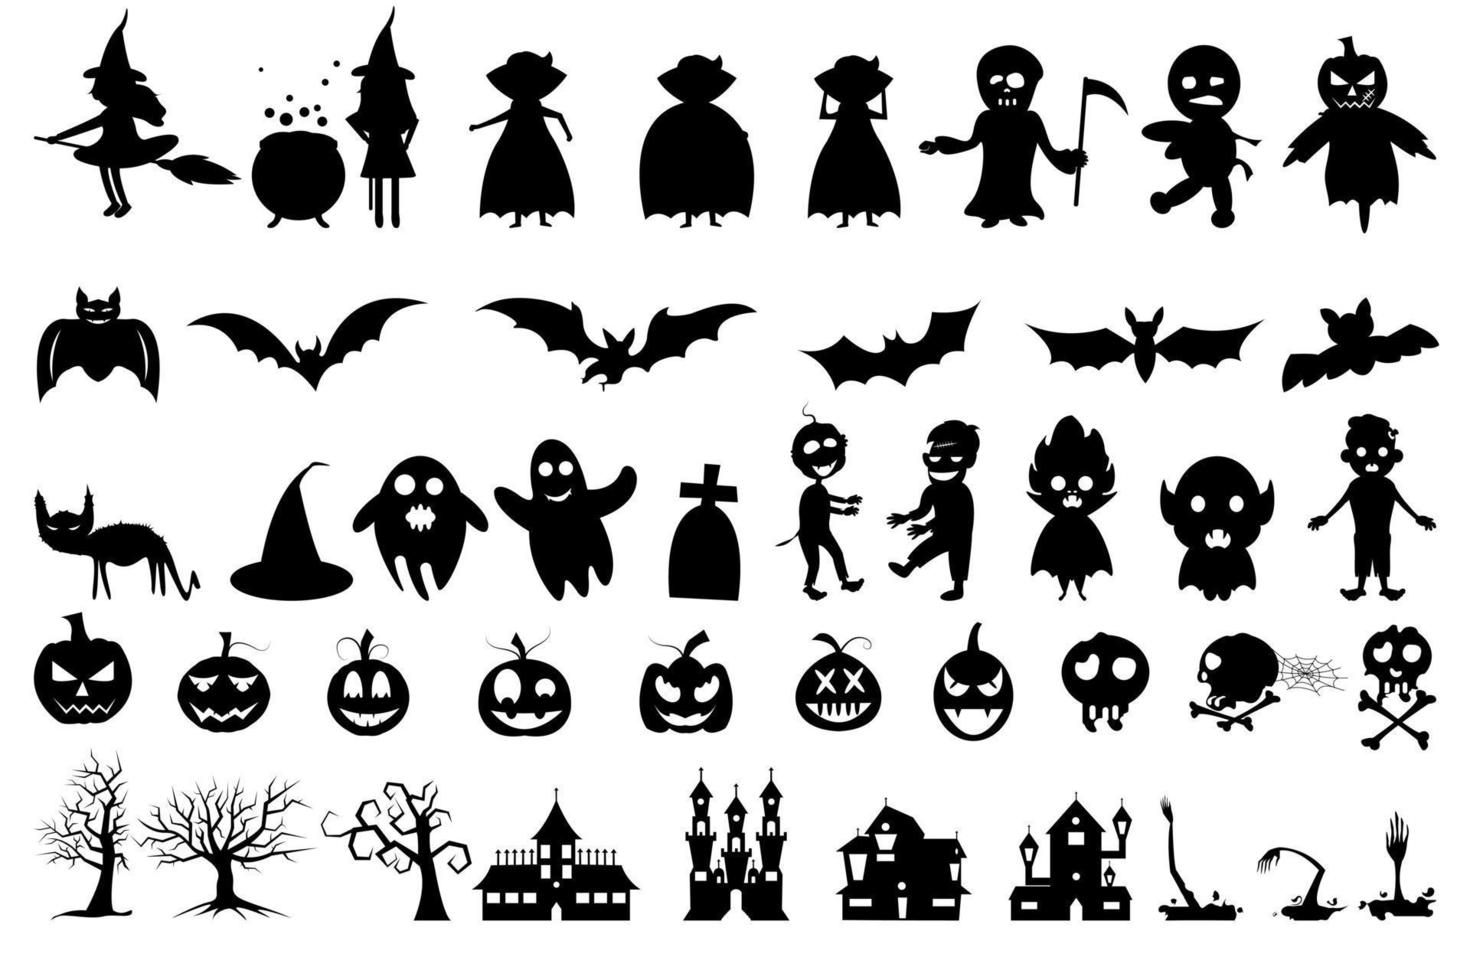 célébration d'halloween avec des silhouettes de zombies, de vampires, de chauves-souris, de tombes, d'arbres secs, de citrouilles, de chats, de châteaux et de sorcières vecteur